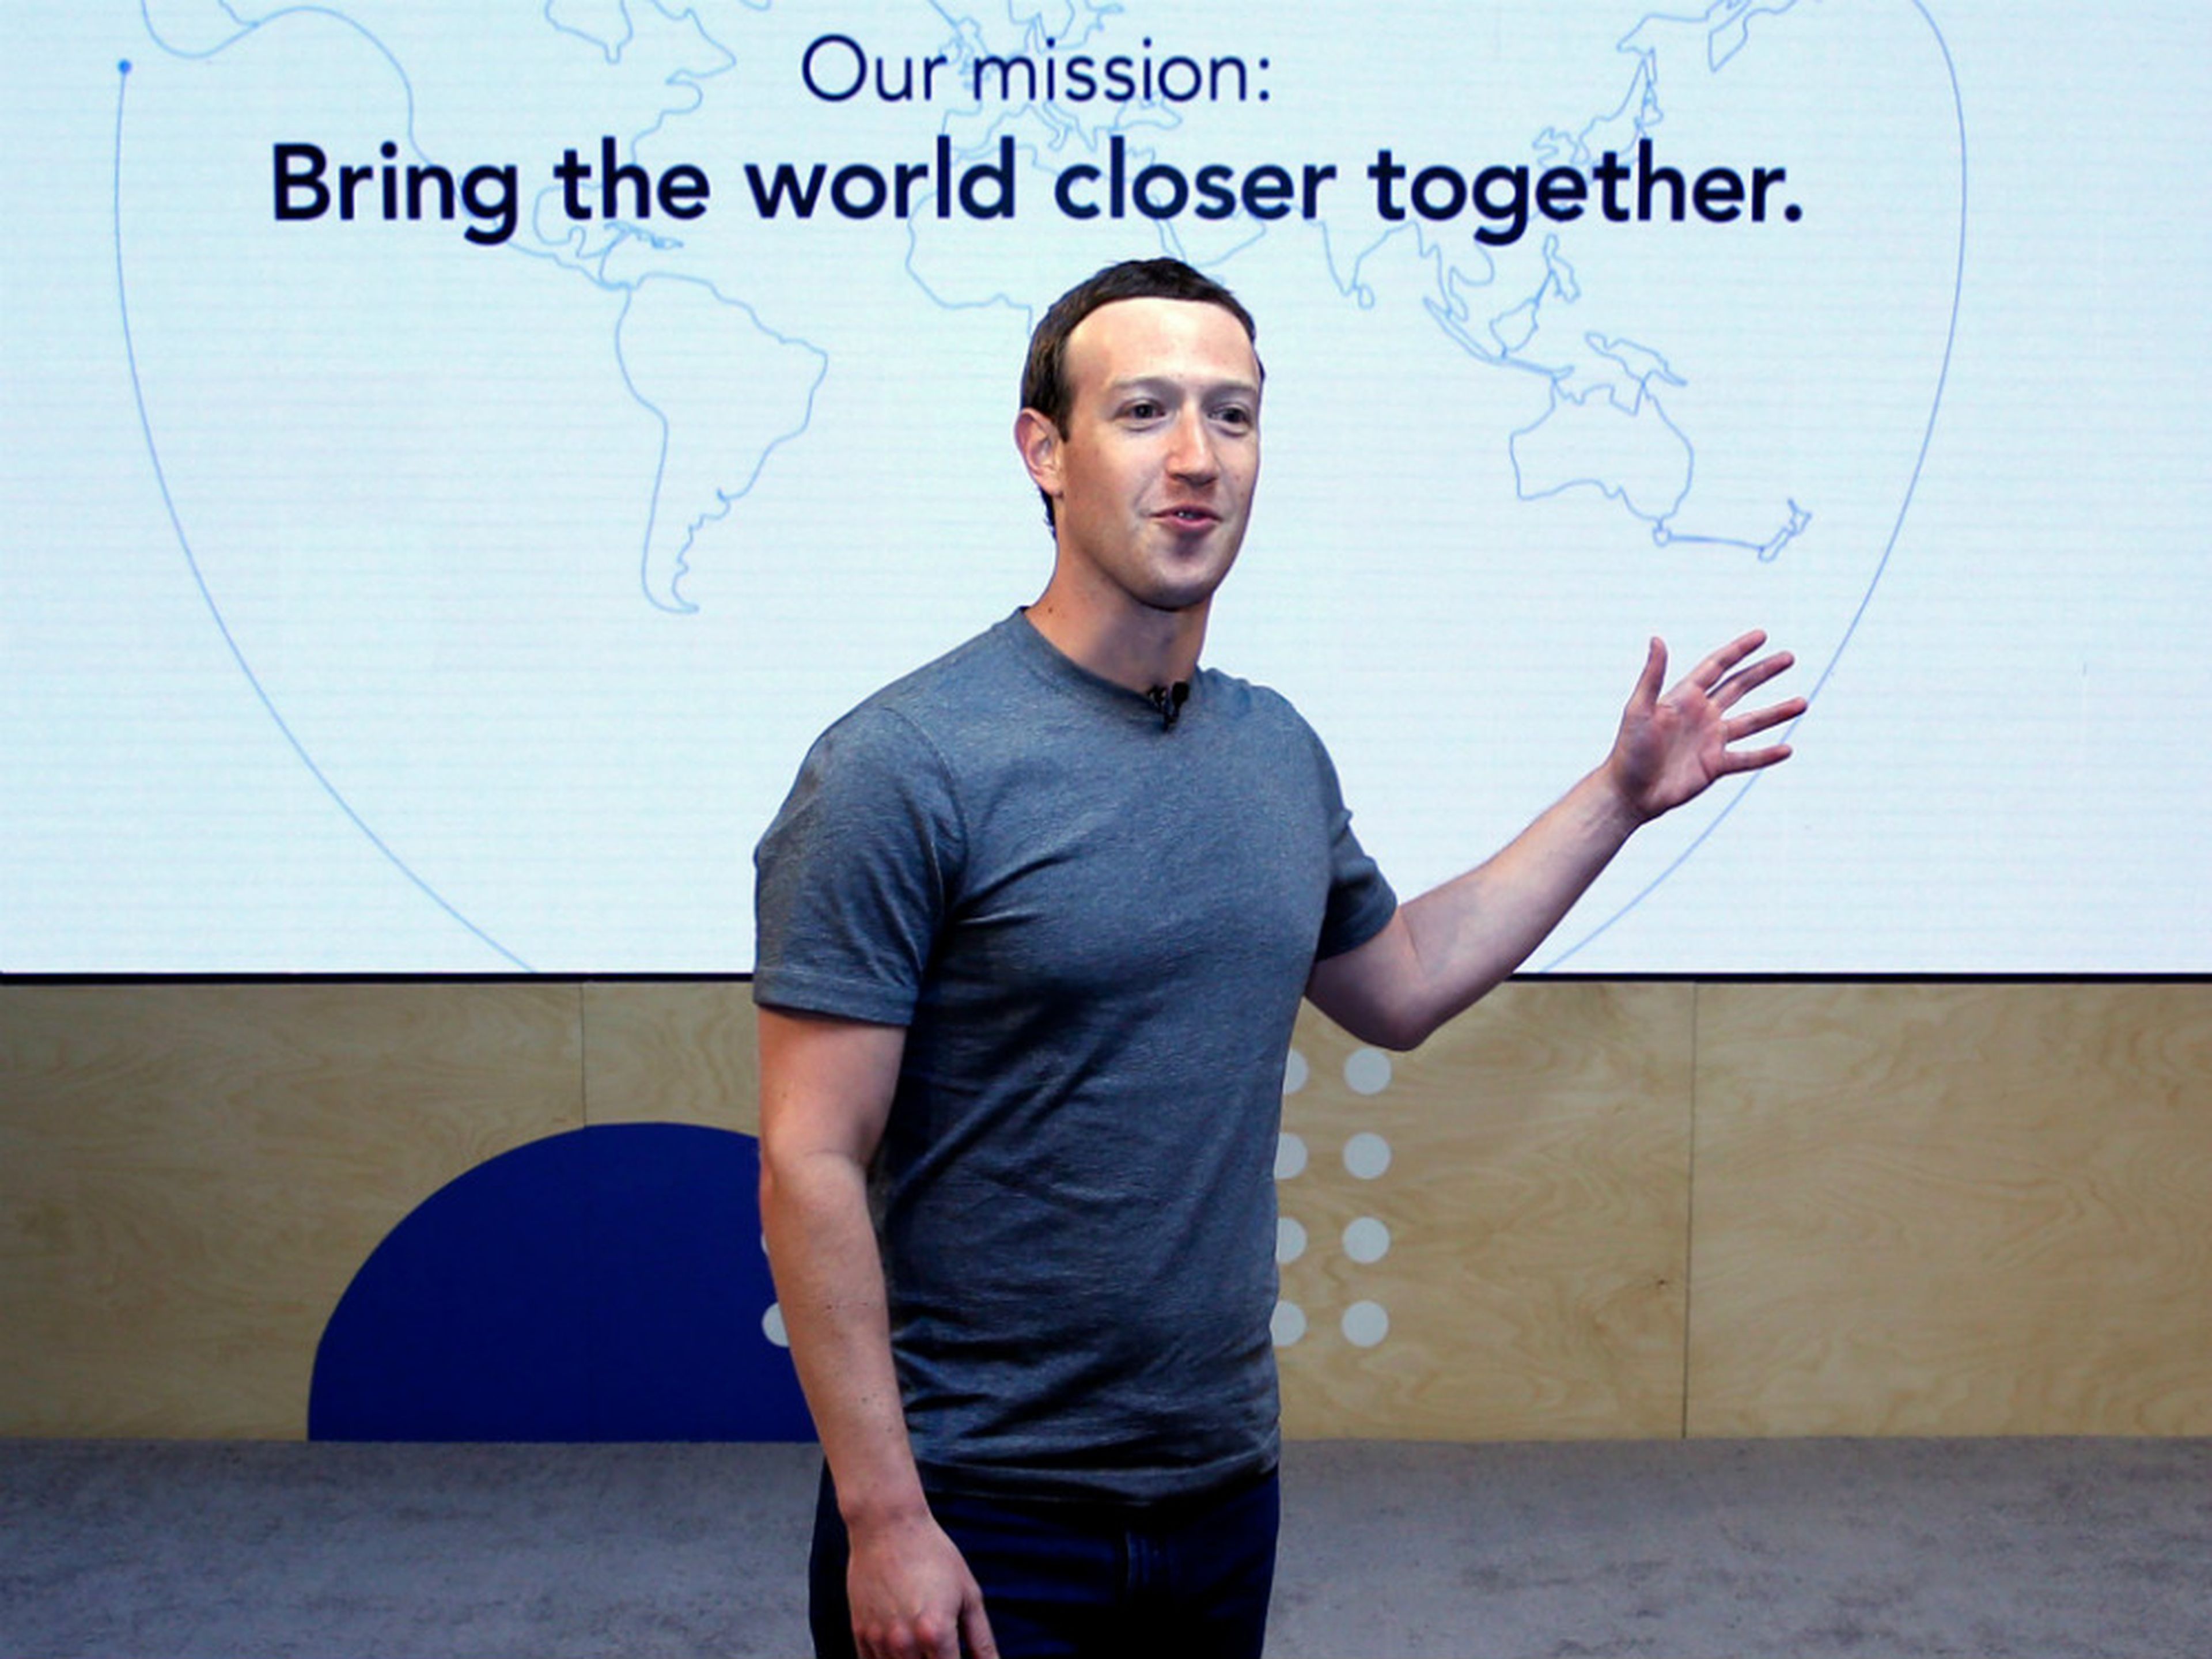 El consejero delegado de Facebook, Mark Zuckerberg.